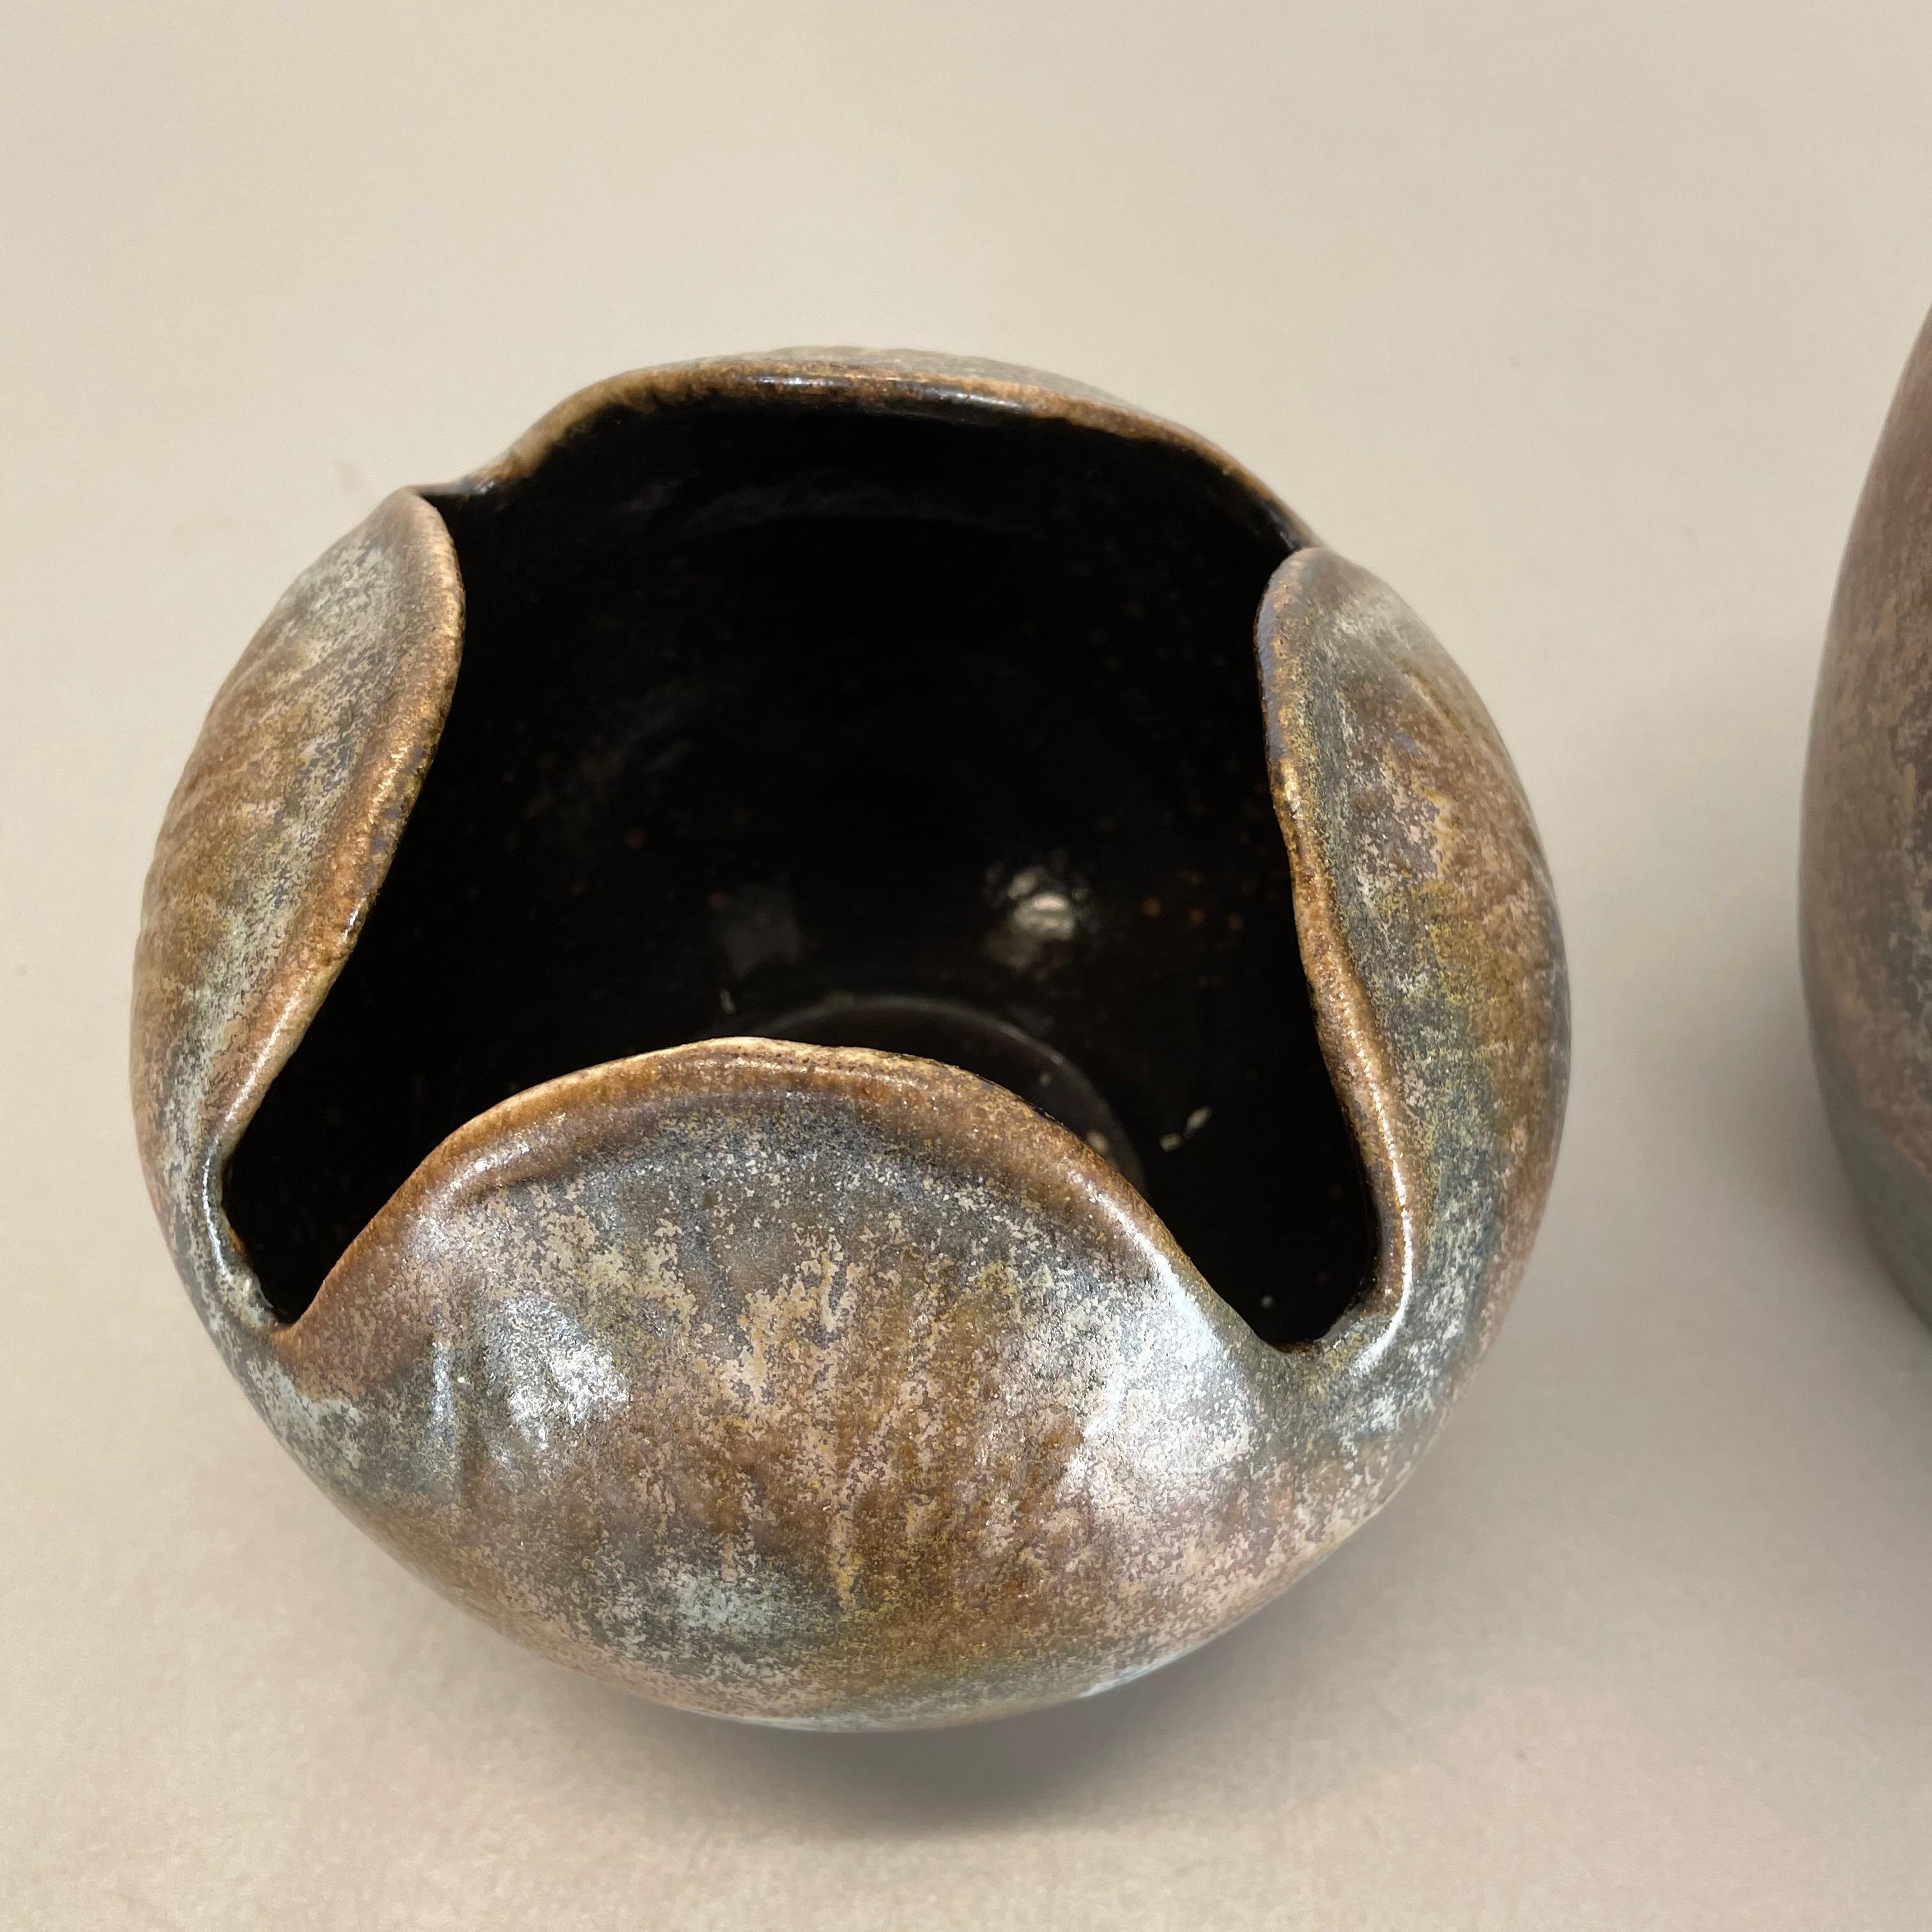 Set of 2 Rare Ceramic Pottery 